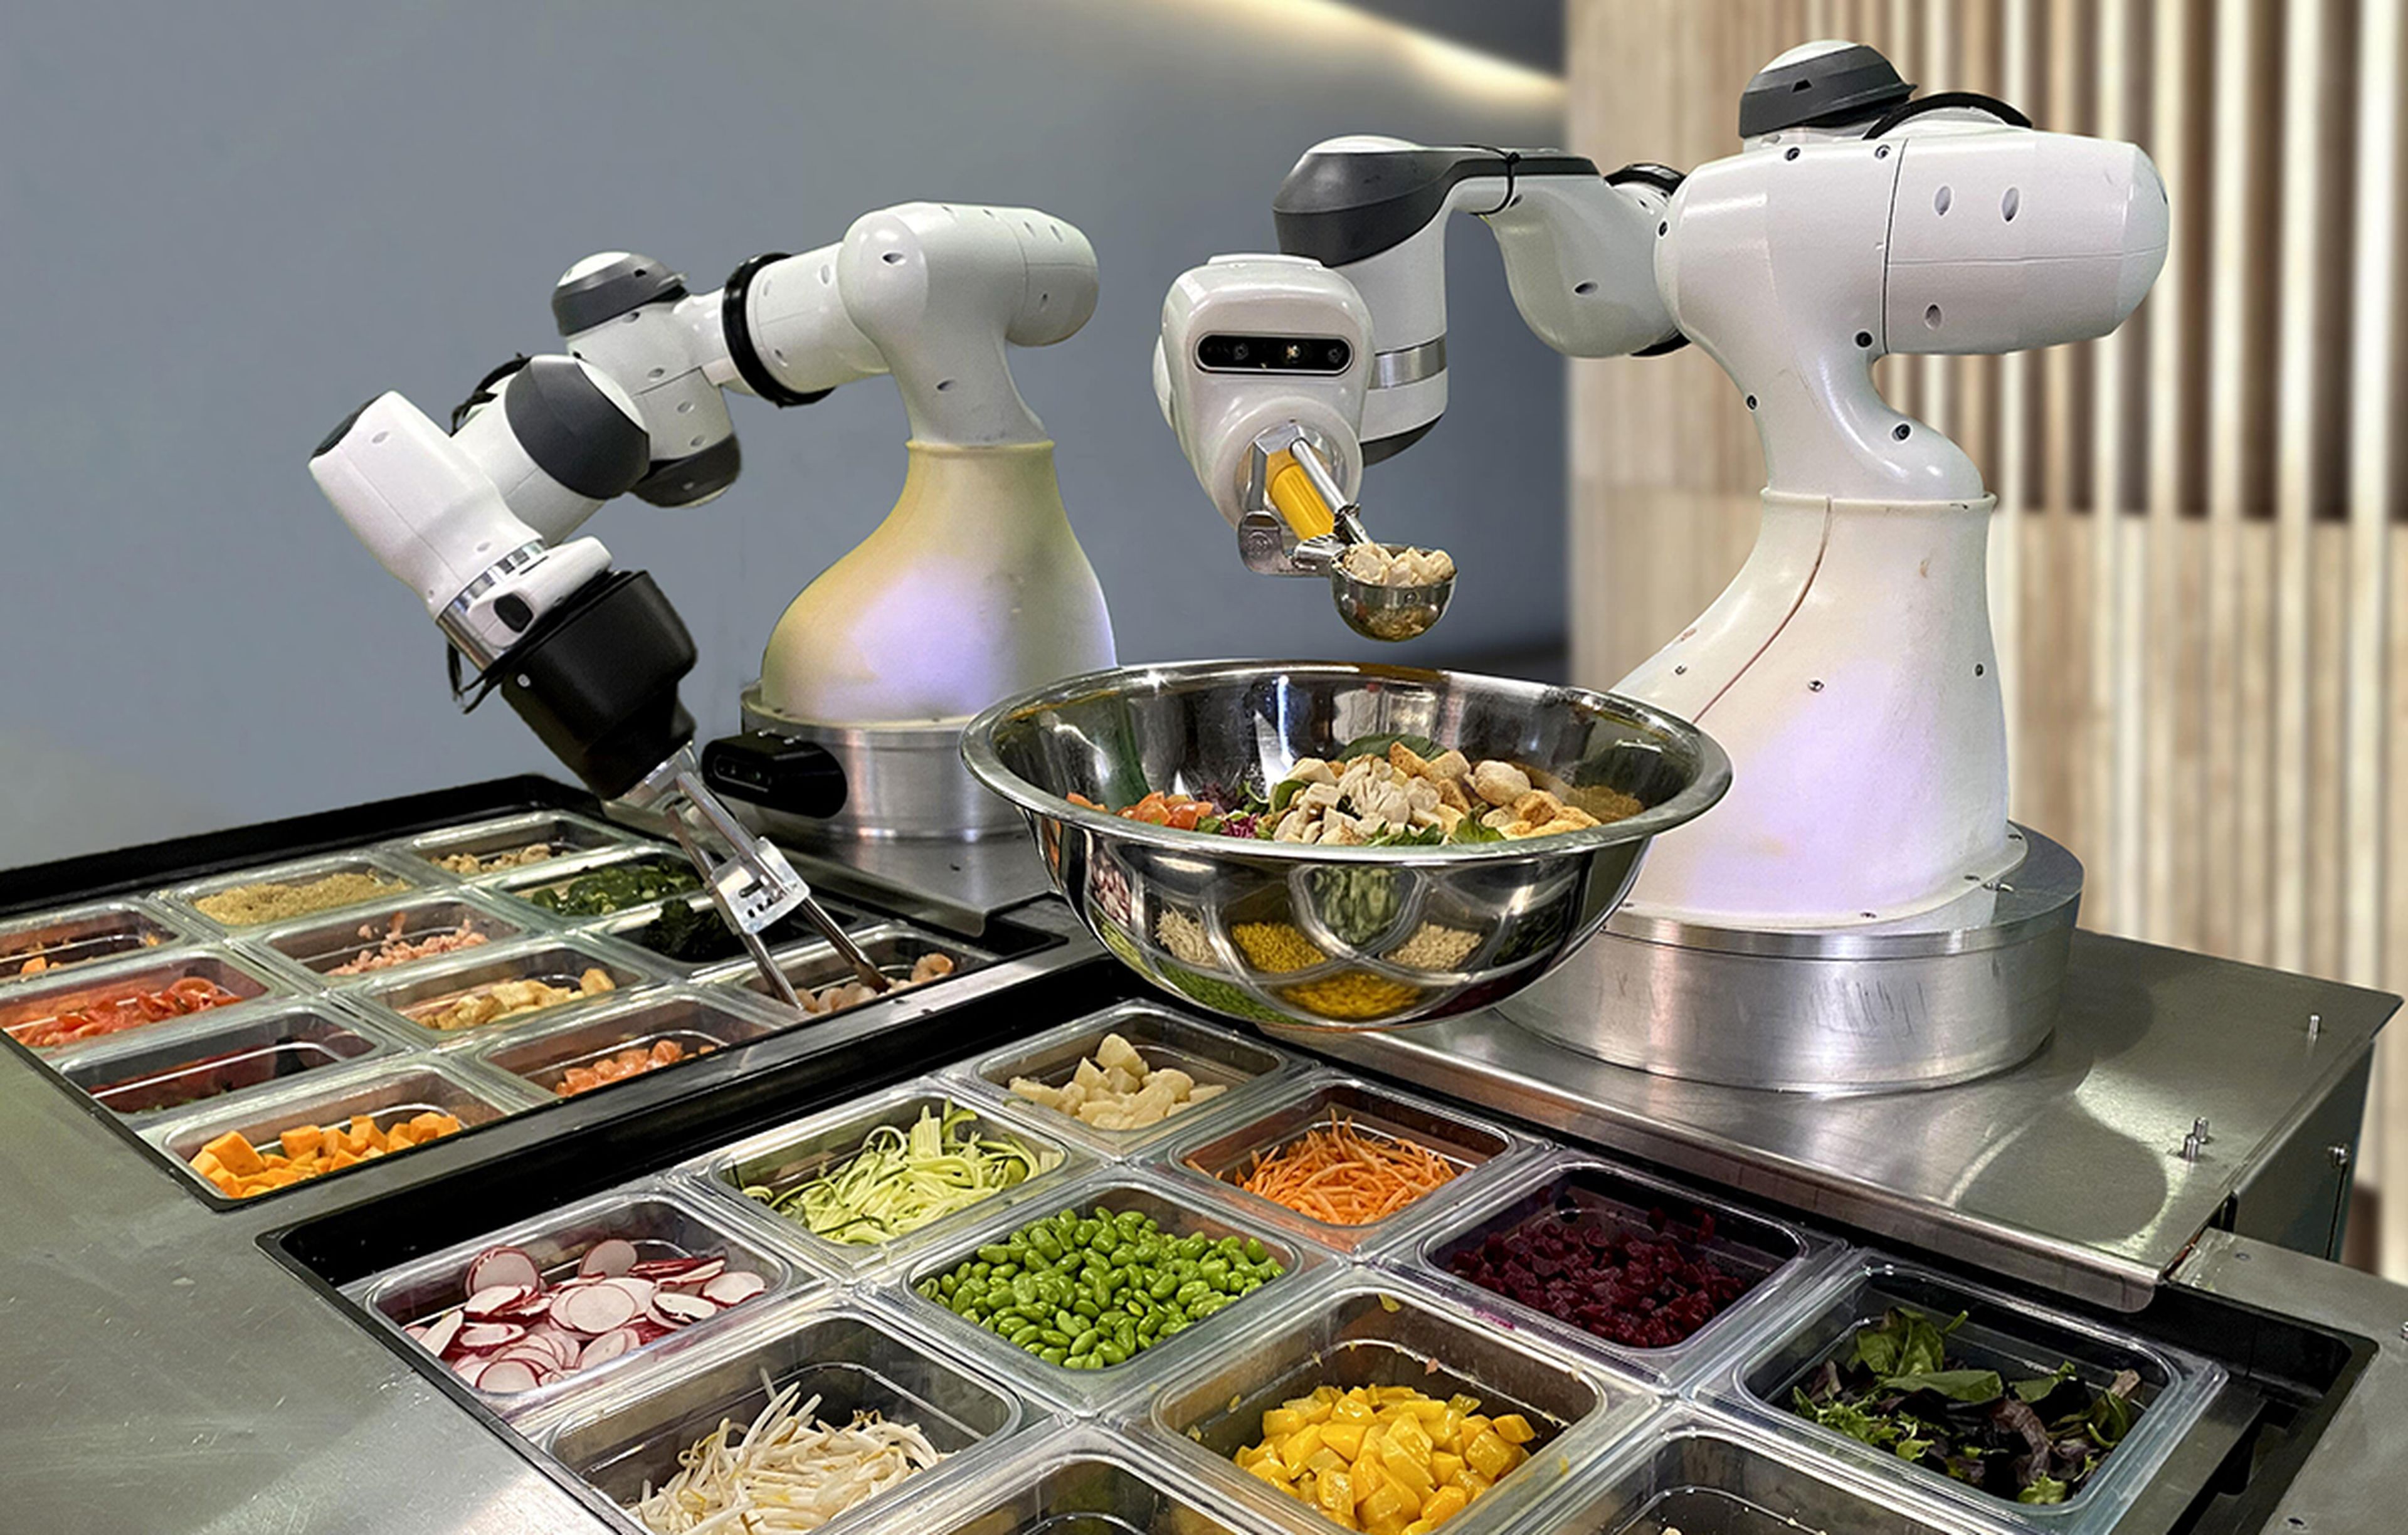 Robot pinche de cocina